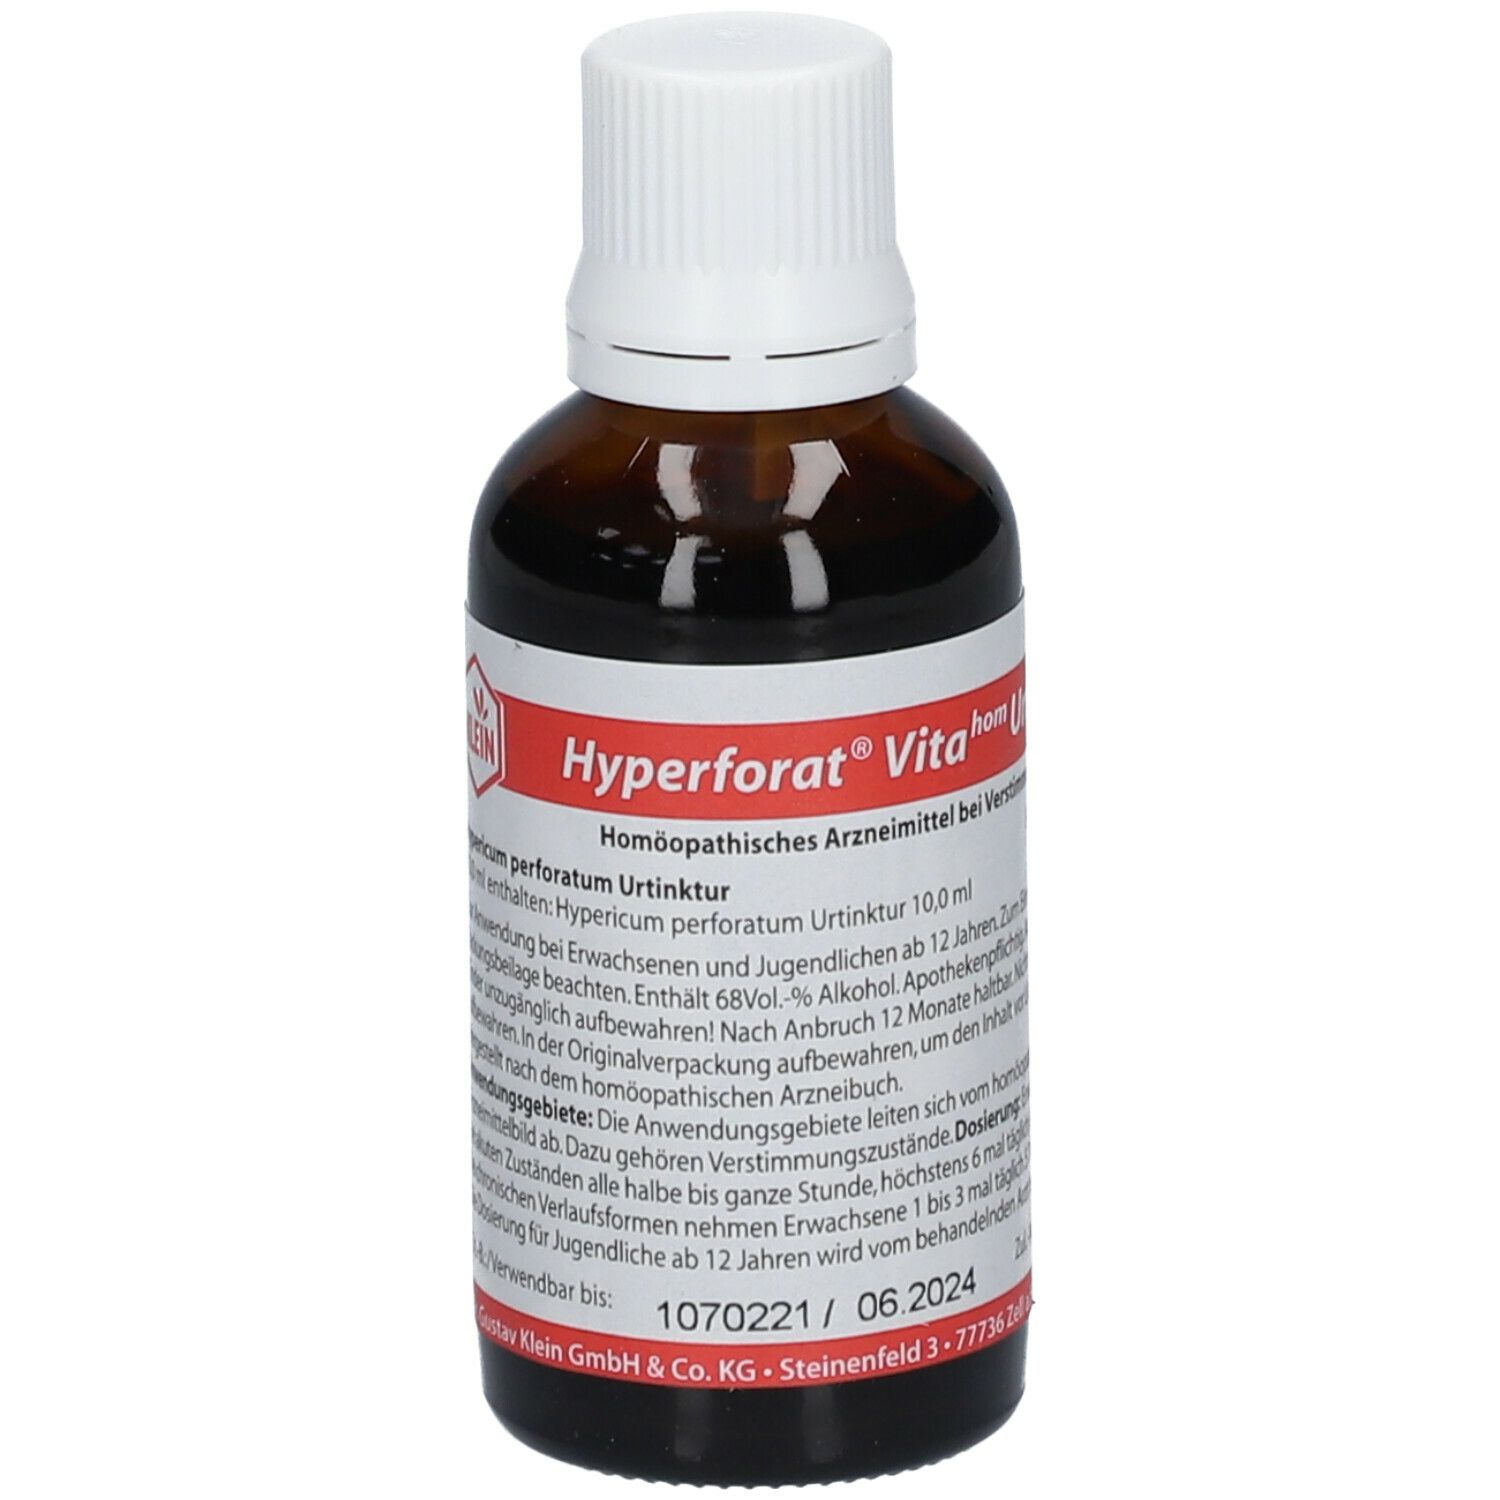 Hyperforat® Vitahom